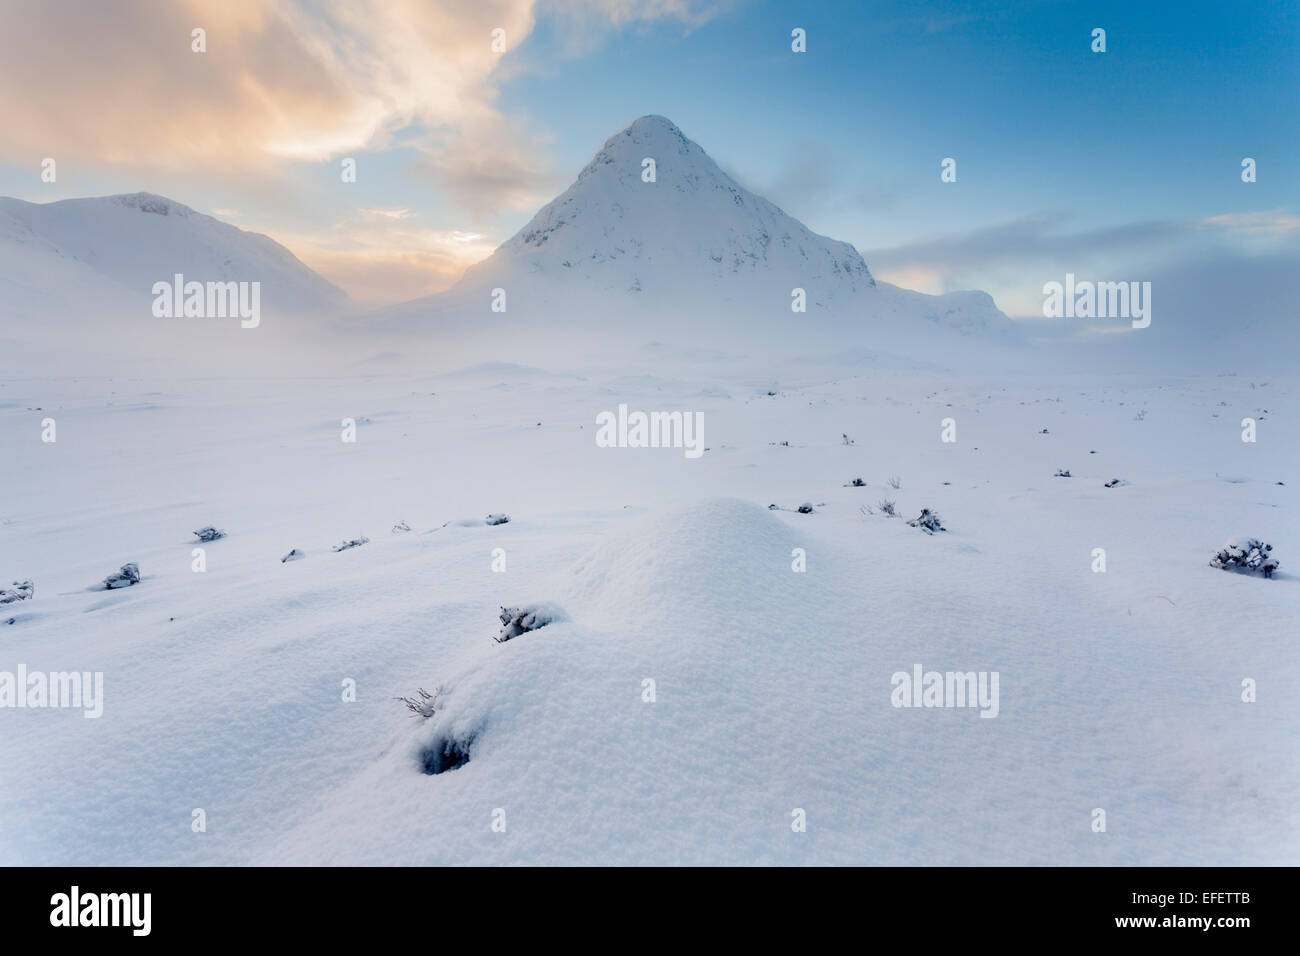 Le wee Buachaille recouverts d'une épaisse couche de neige que le soleil se couchait était derrière la montagne. Banque D'Images